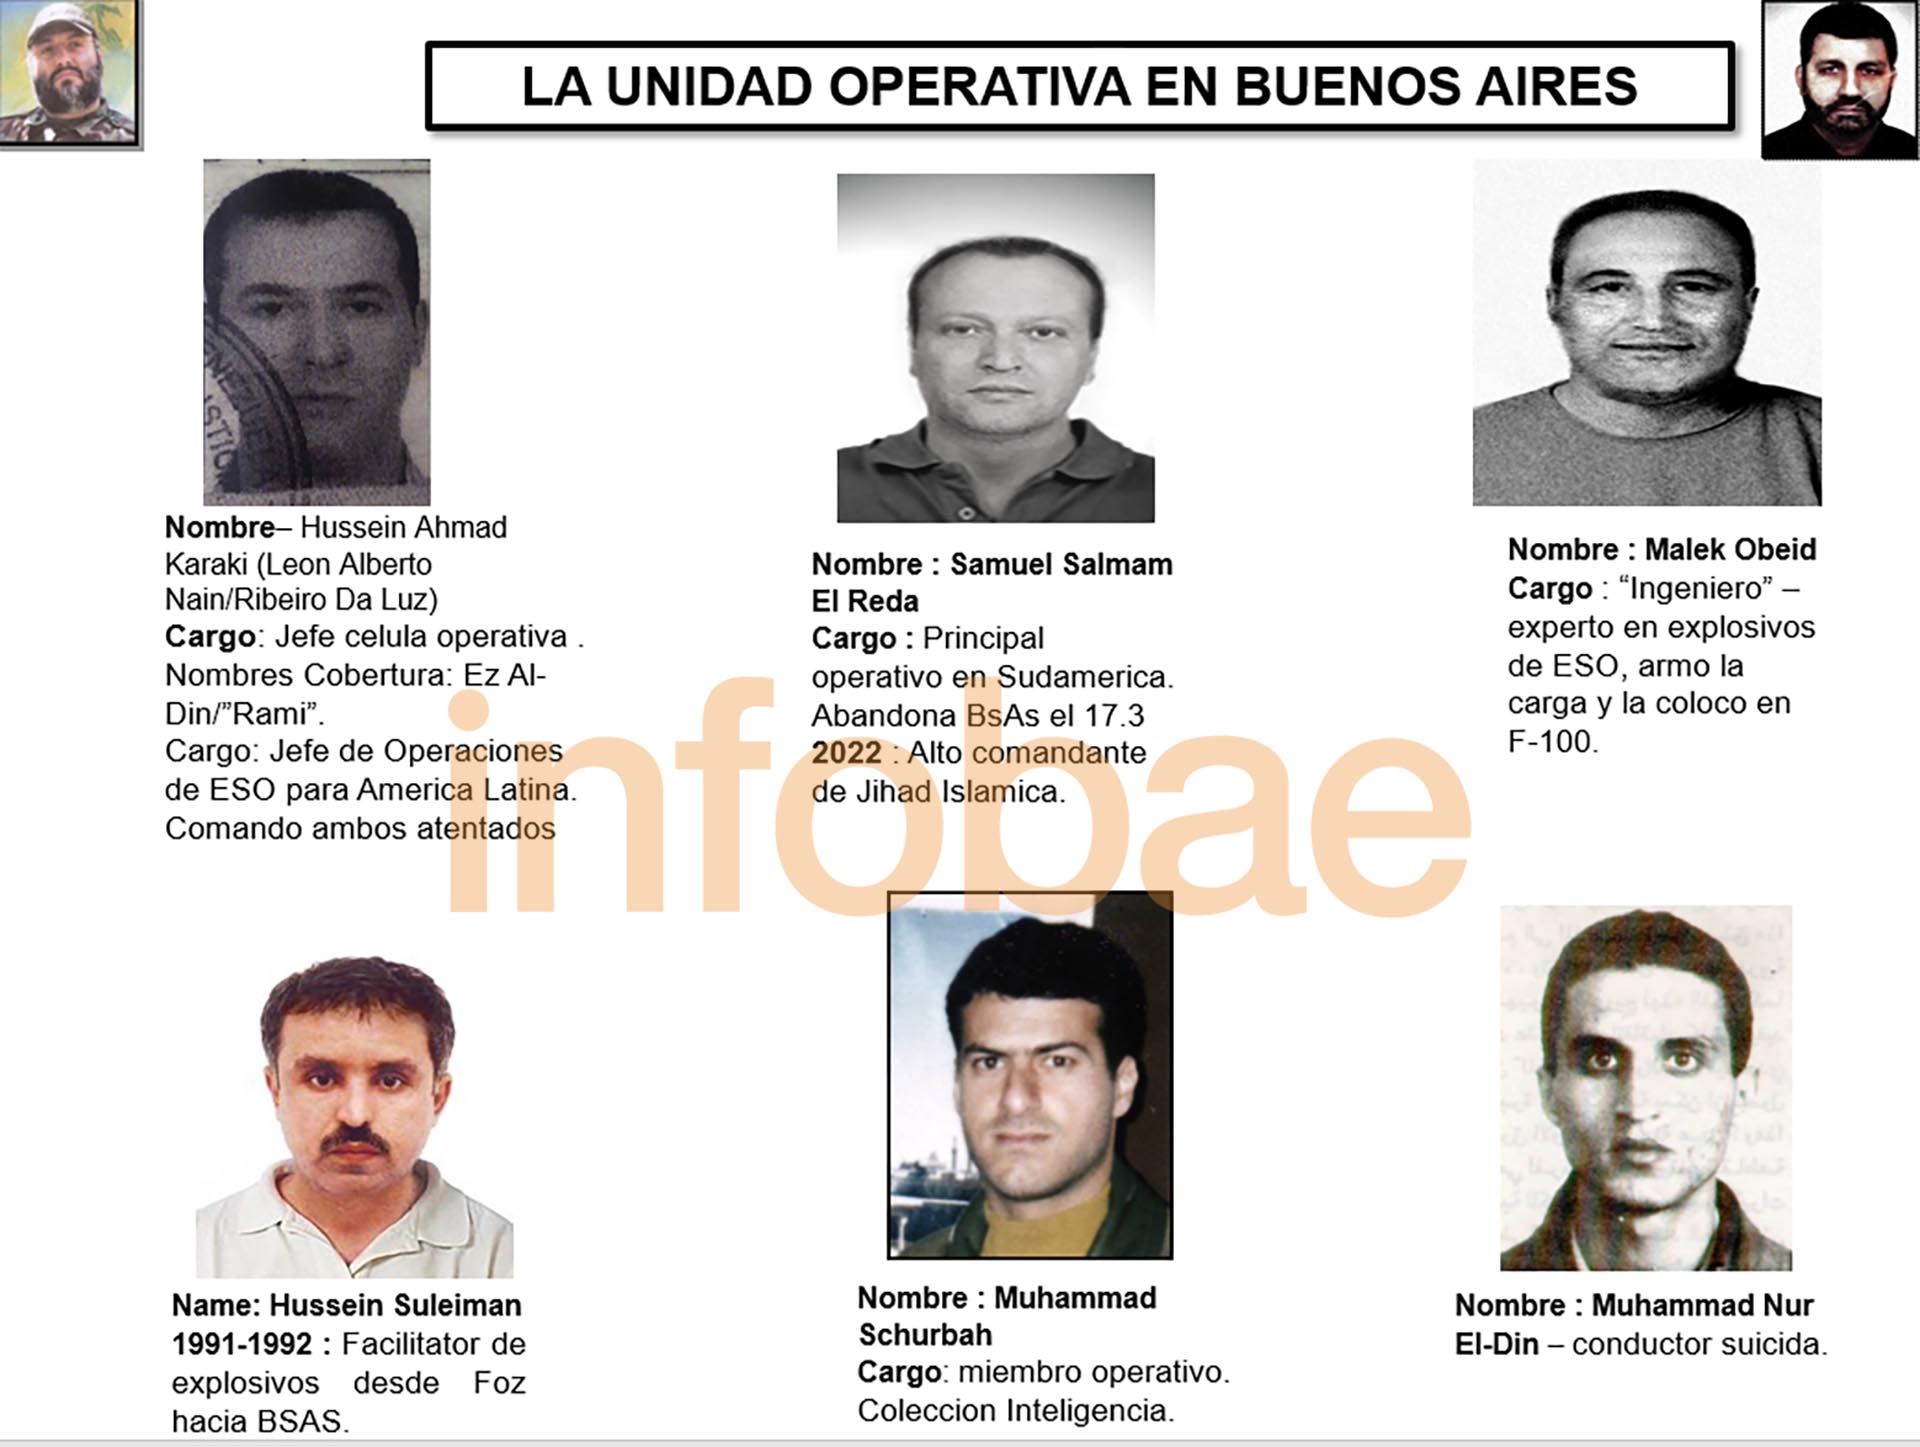 El conductor suicida (abajo a la derecha) aparece como parte de la unidad operativa en Buenos Aires 